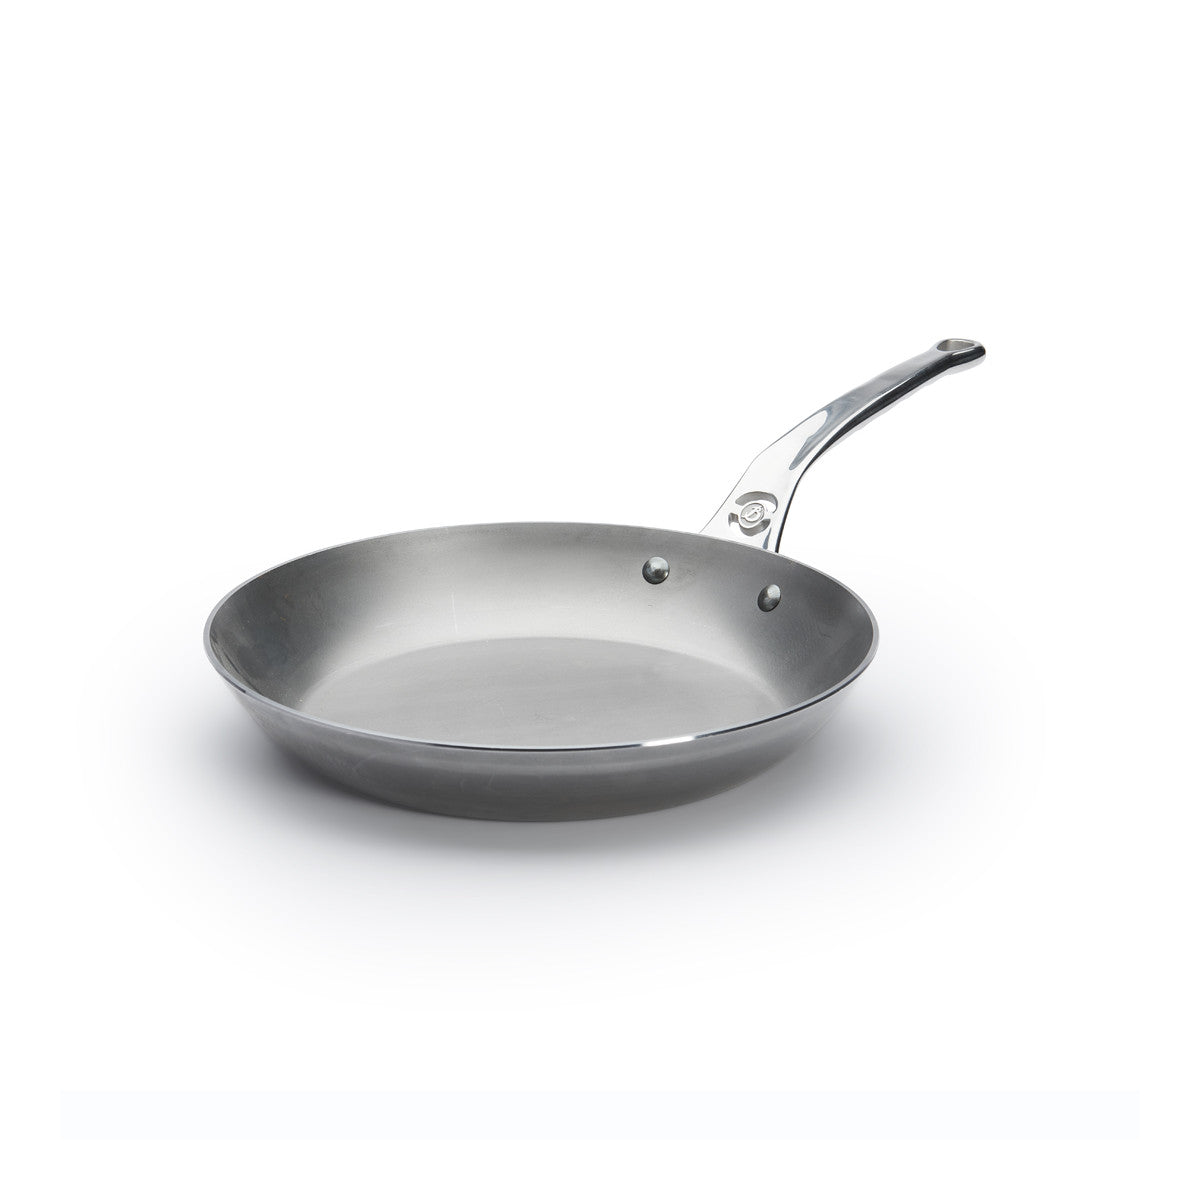 De Buyer Mineral B Pro frying pan